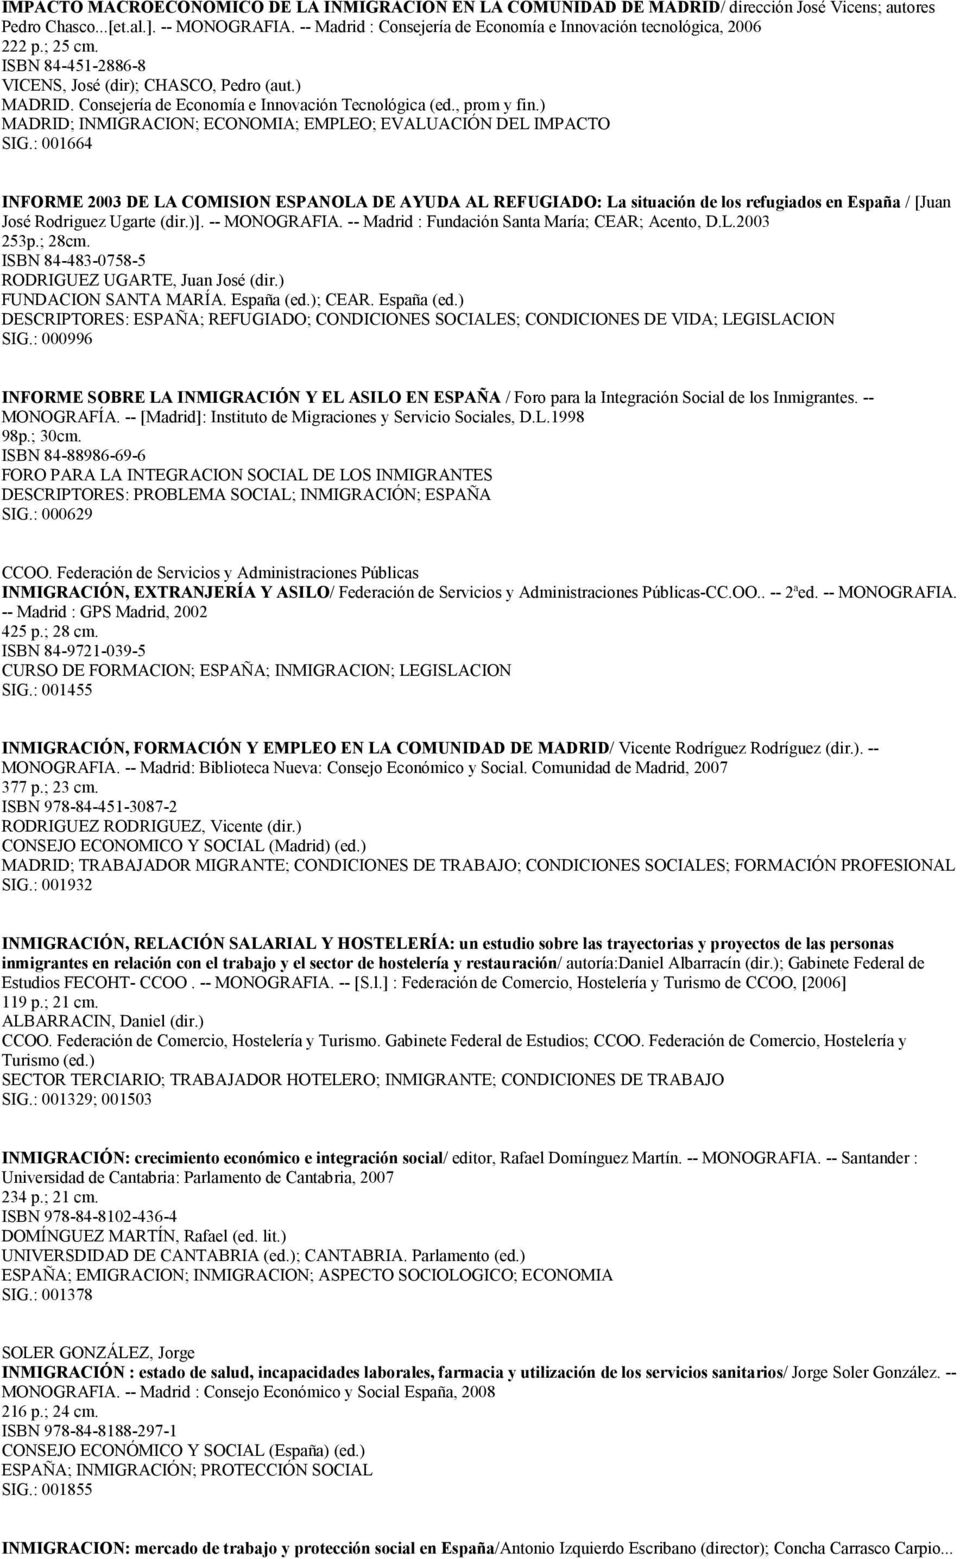 Consejería de Economía e Innovación Tecnológica (ed., prom y fin.) MADRID; INMIGRACION; ECONOMIA; EMPLEO; EVALUACIÓN DEL IMPACTO SIG.